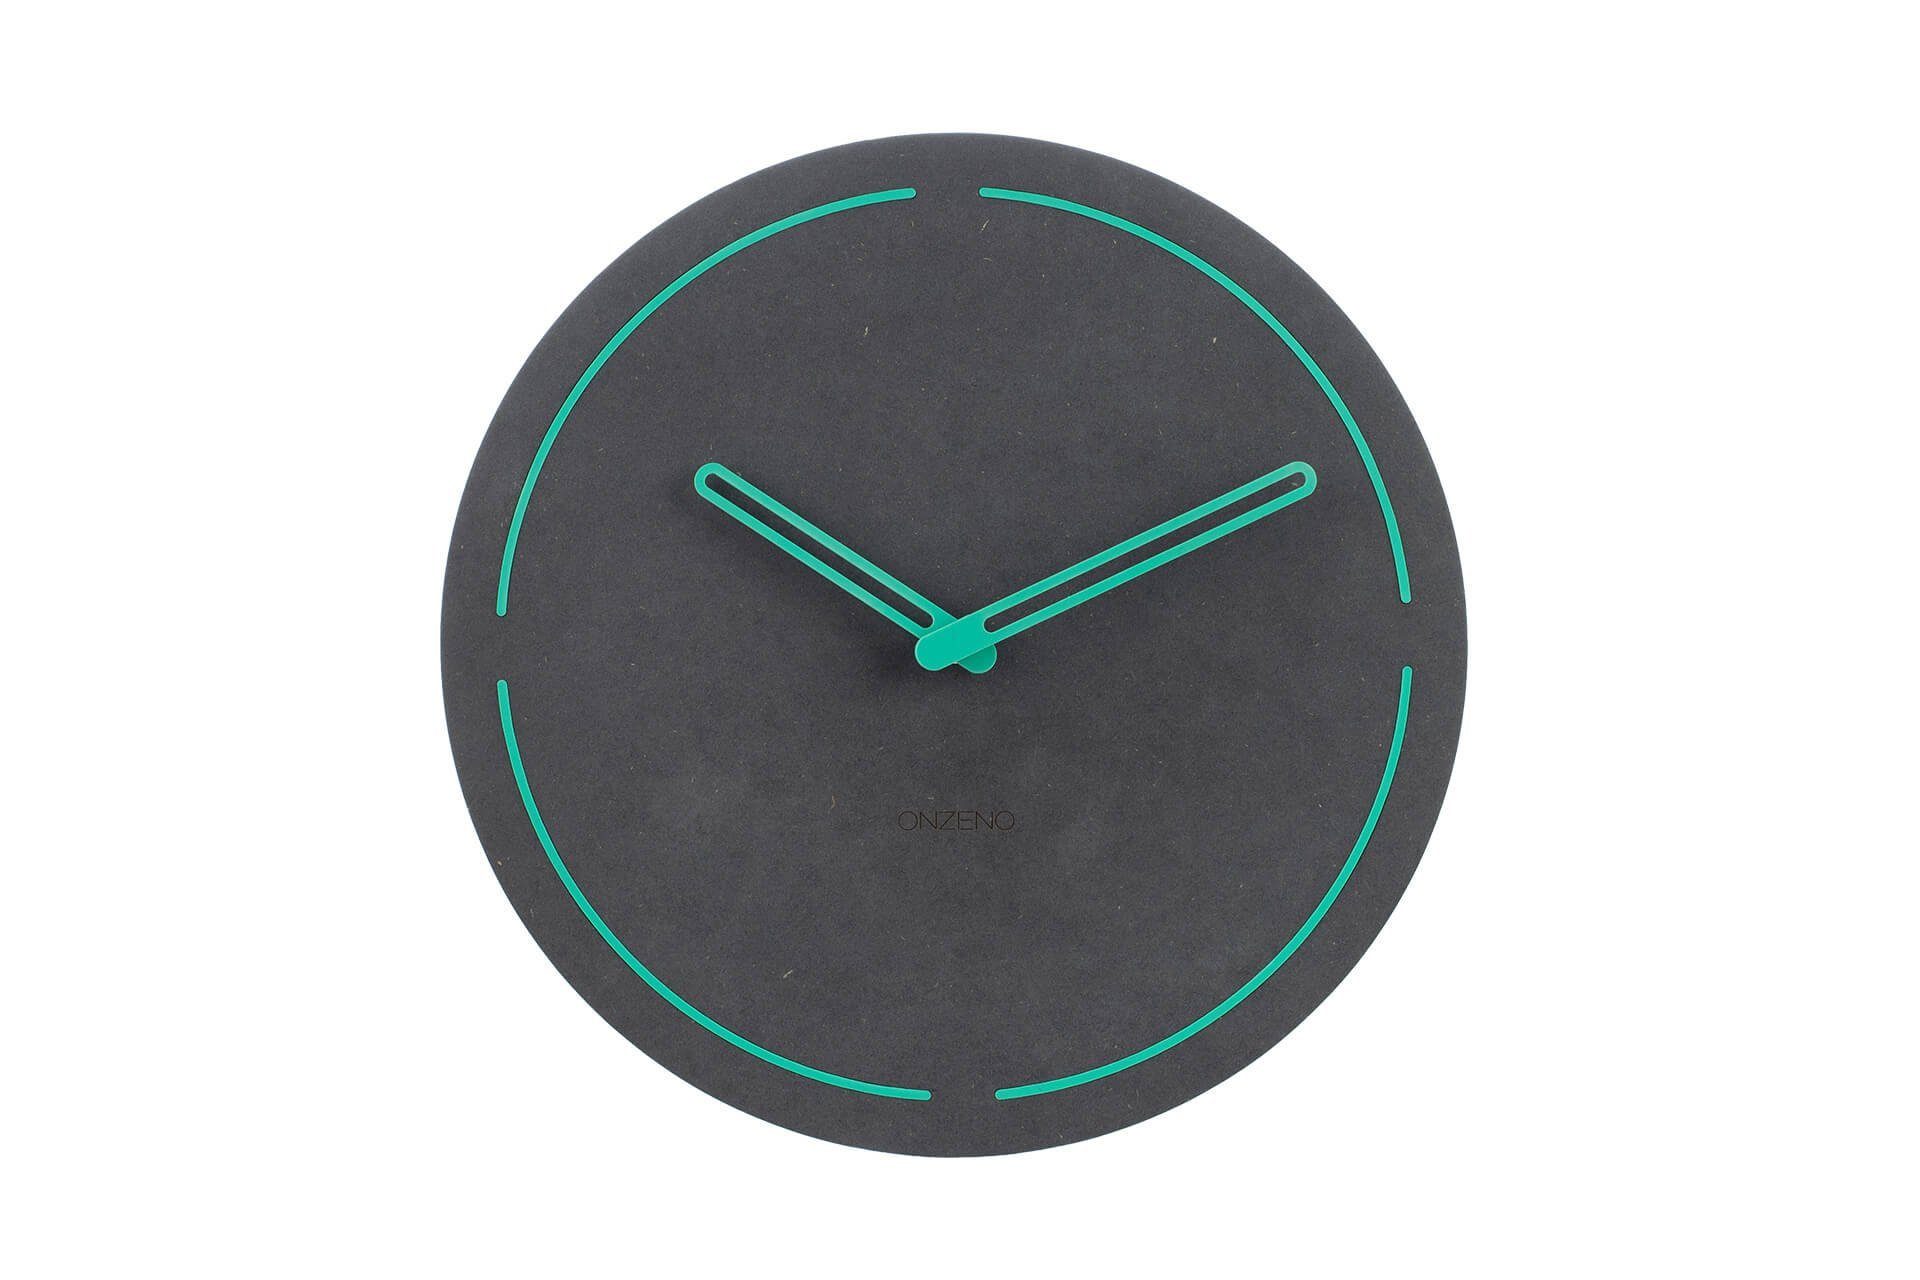 ONZENO Wanduhr THE NEON. 26x26x0.5 cm (handgefertigte Design-Uhr)